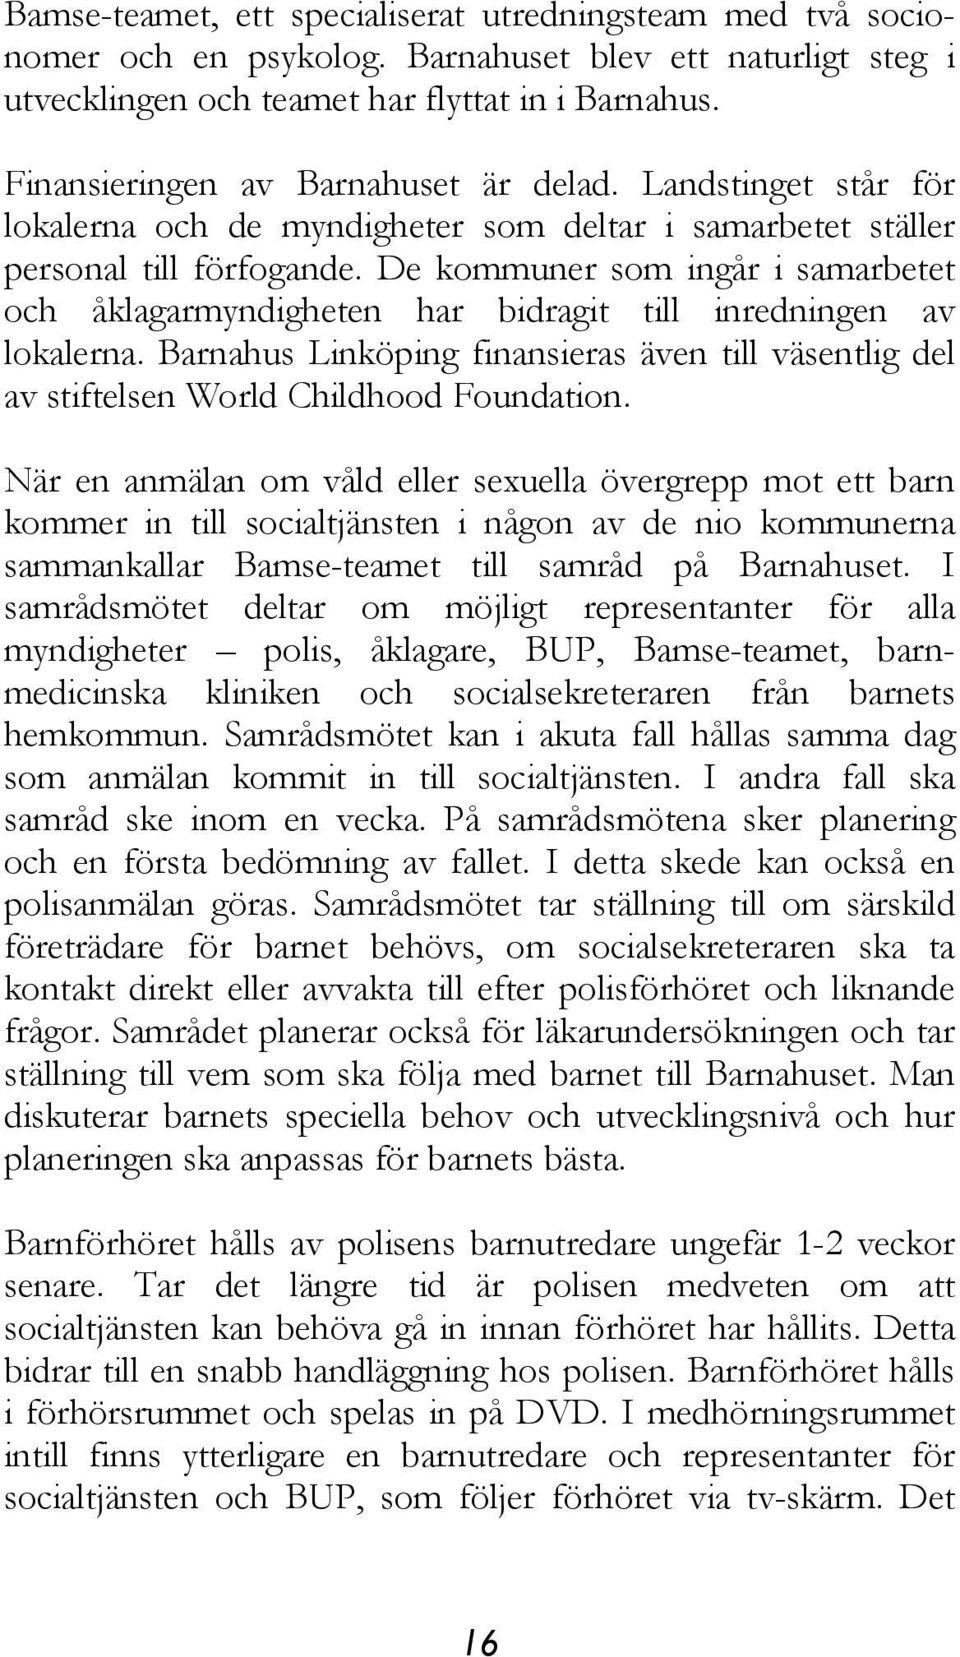 De kommuner som ingår i samarbetet och åklagarmyndigheten har bidragit till inredningen av lokalerna. Barnahus Linköping finansieras även till väsentlig del av stiftelsen World Childhood Foundation.